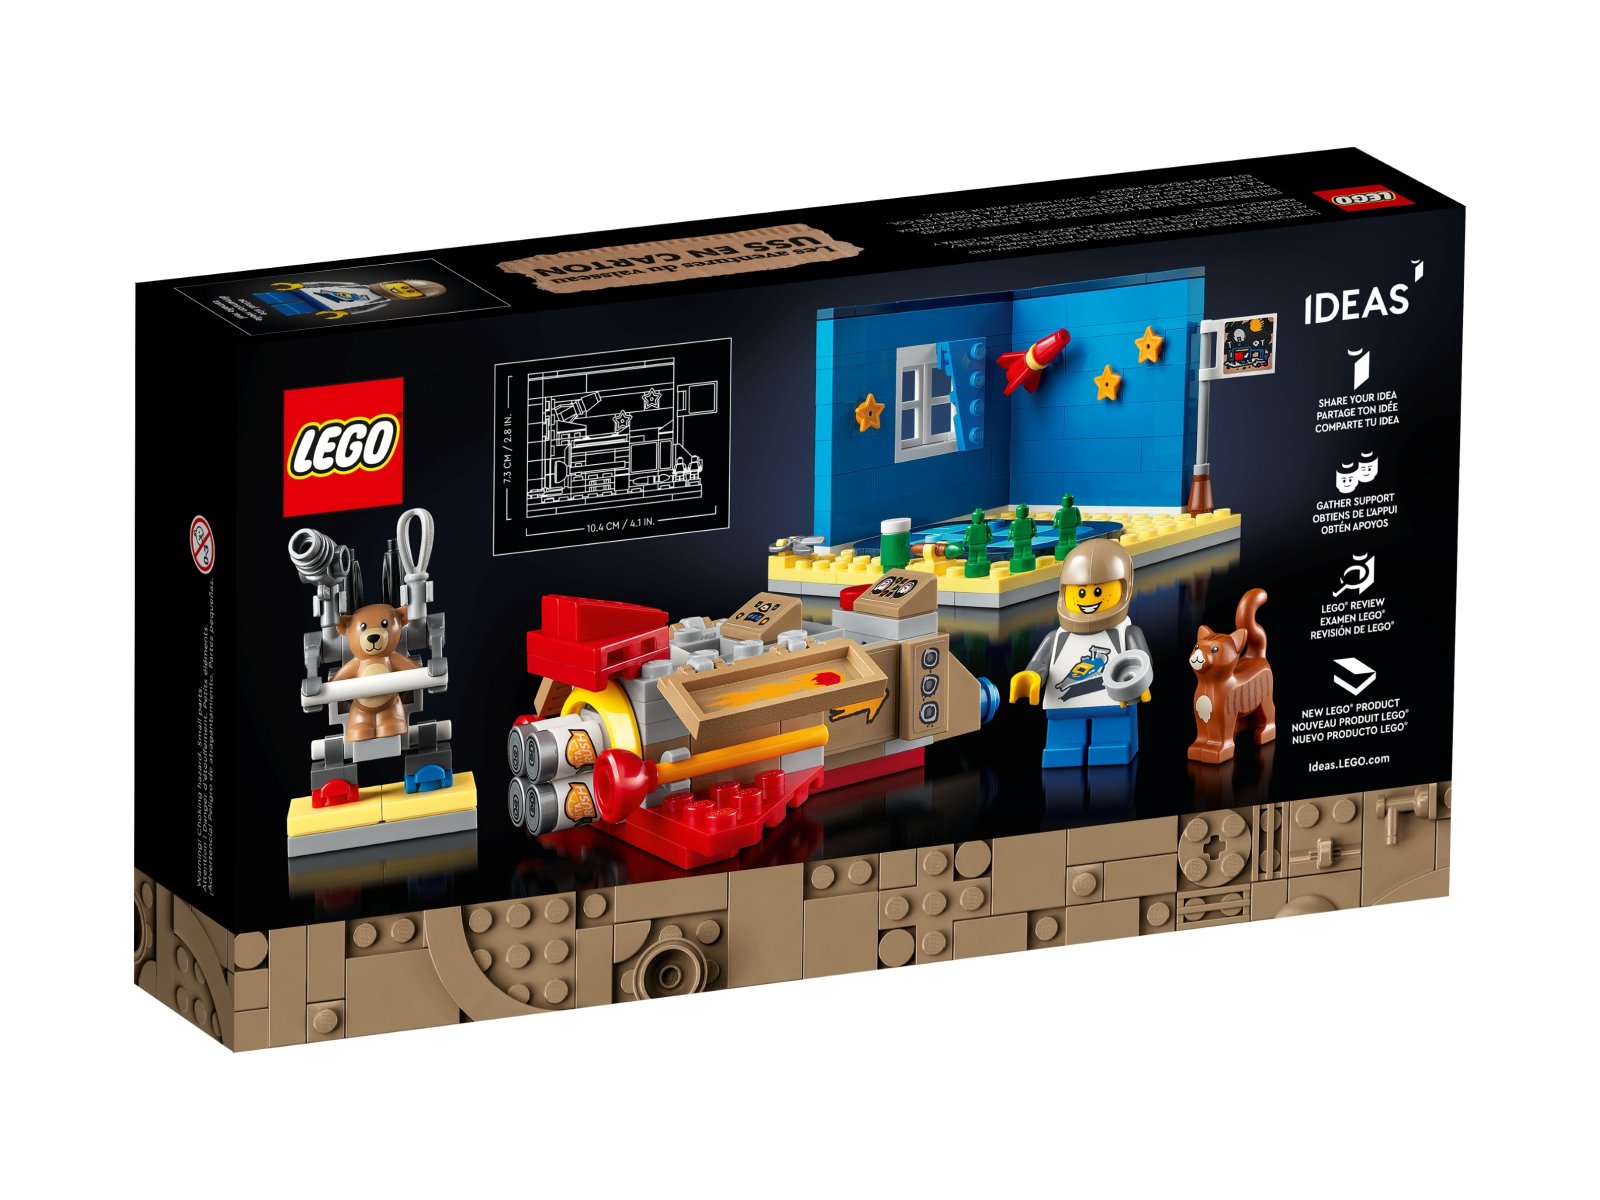 LEGO 40533 Przygody statku USS Cardboard